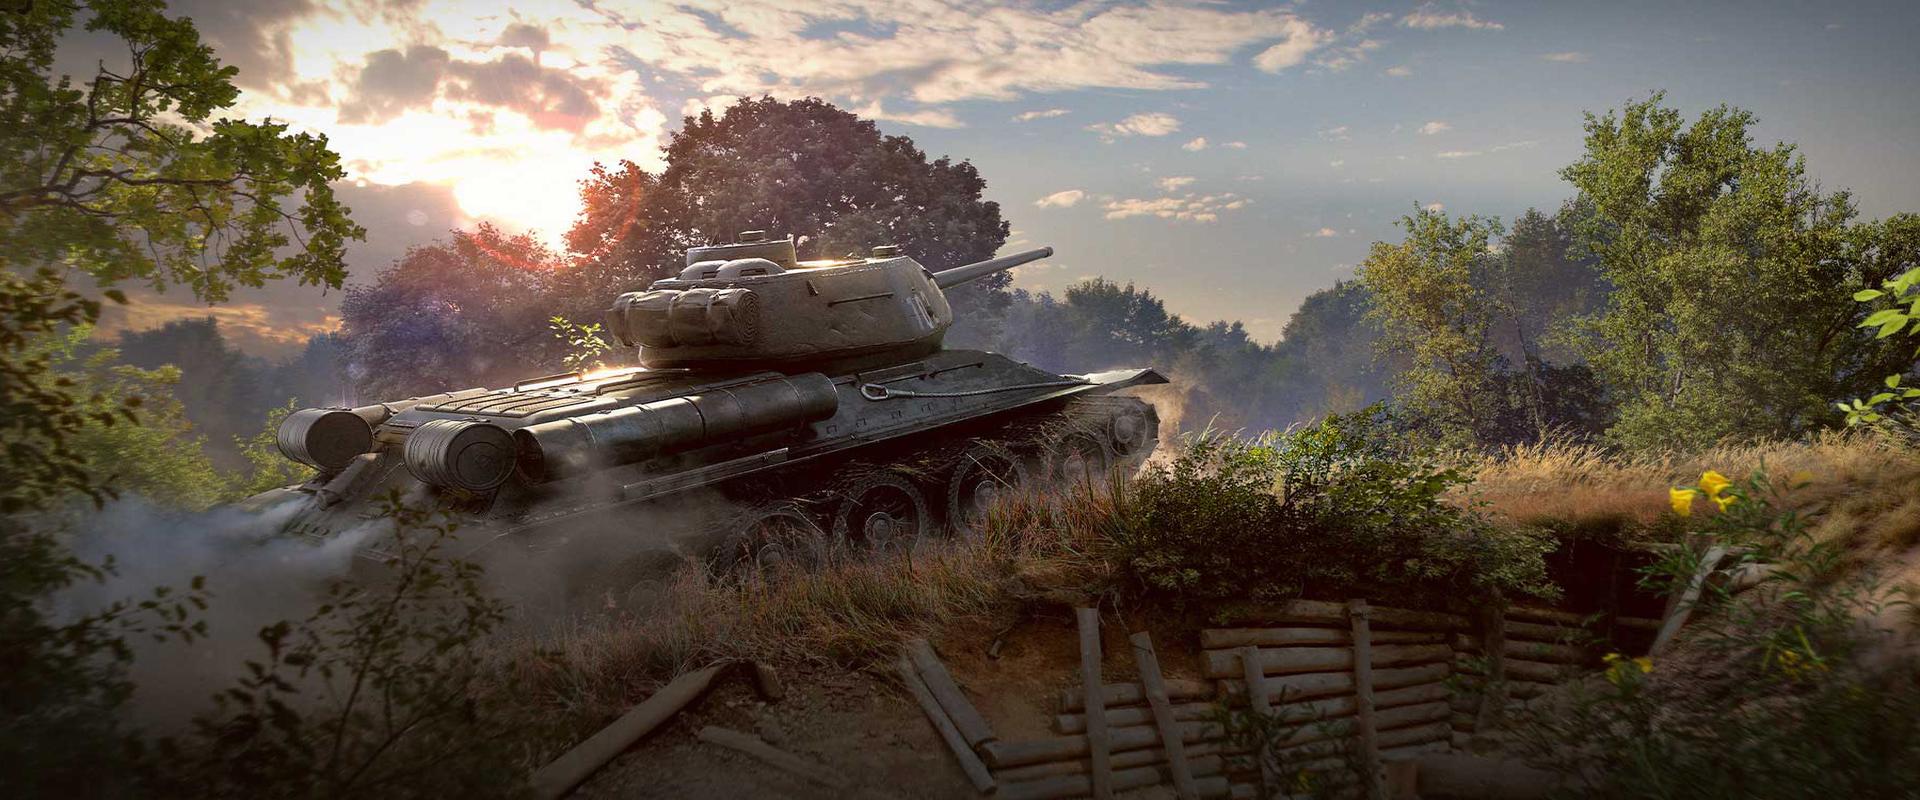 T-34-85 Rudy: Harcolj két nemzettel egyszerre!